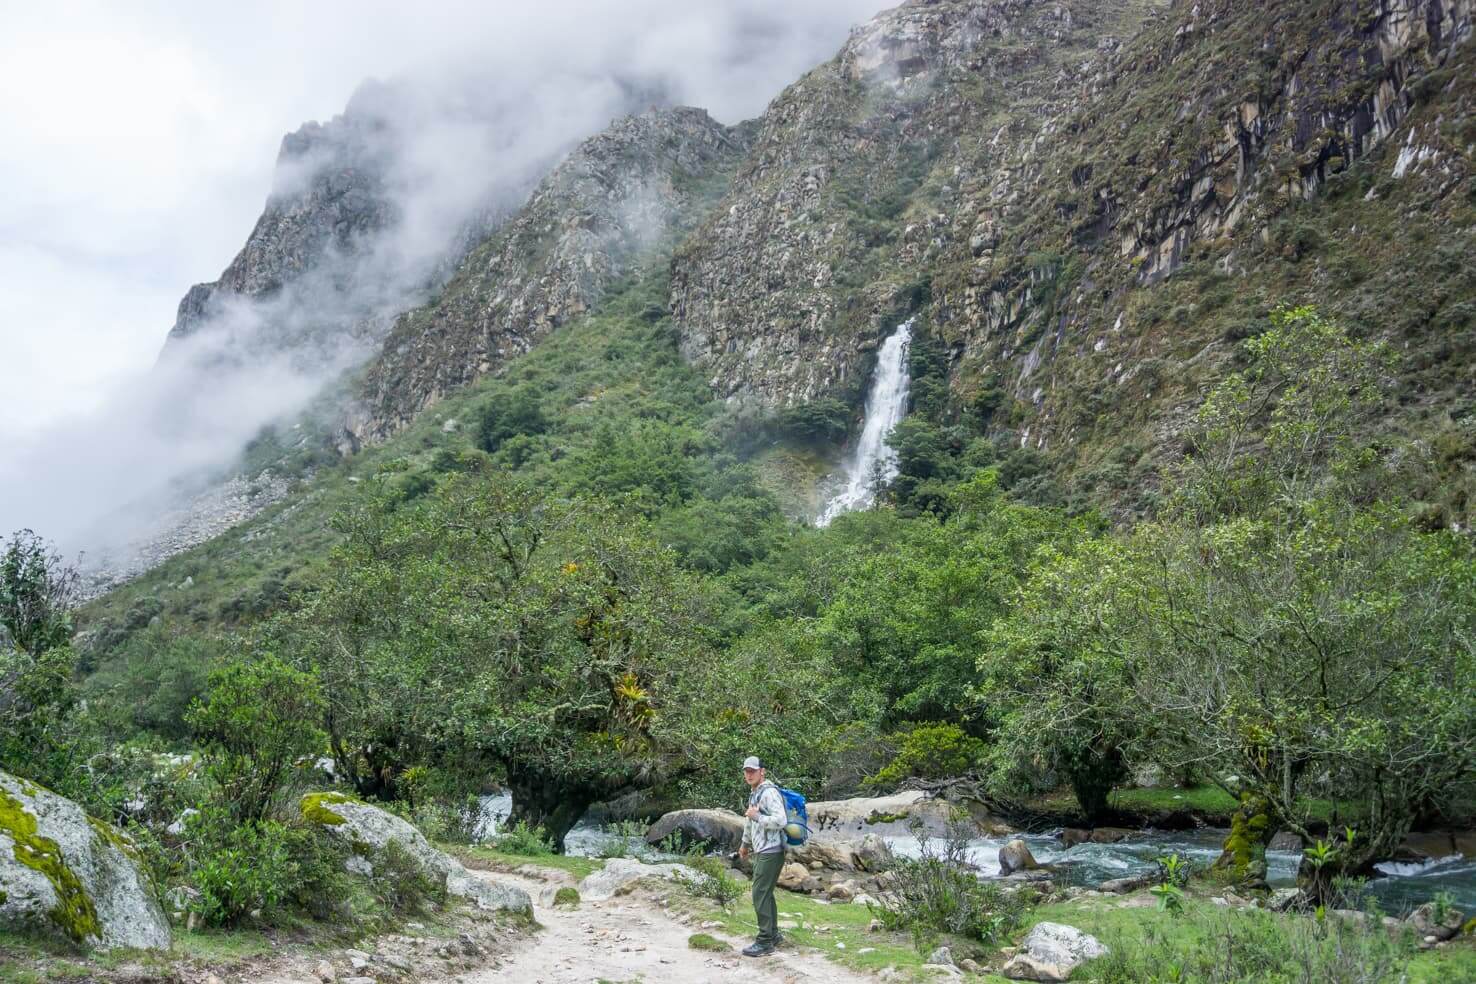 Trekking in high altitudes of Santa Cruz trek, Peru